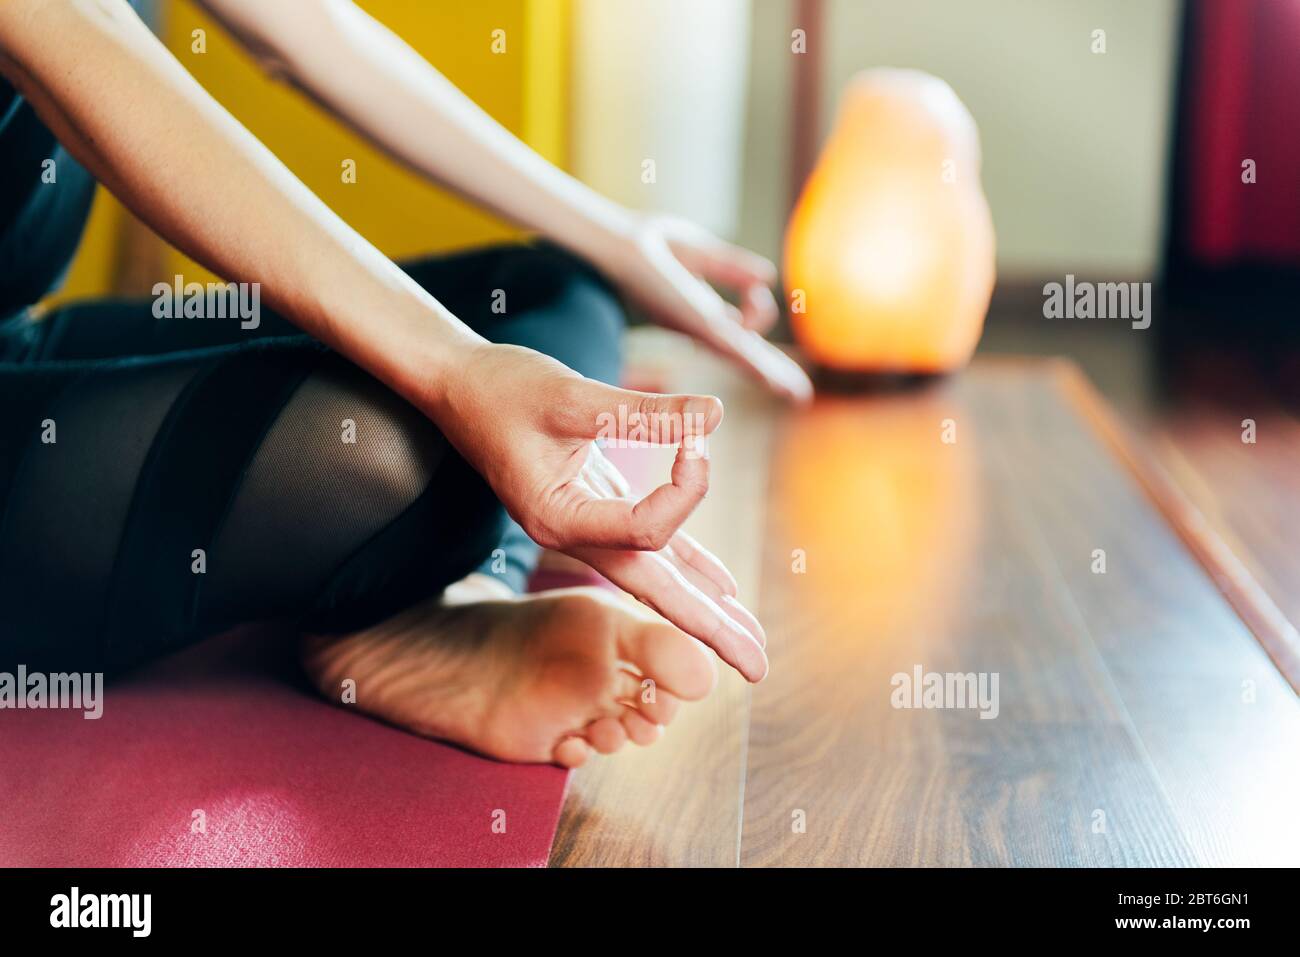 Dettaglio delle mani della donna nel relax yoga posizione concetto di tranquillità e spiritualità dello Yoga Foto Stock